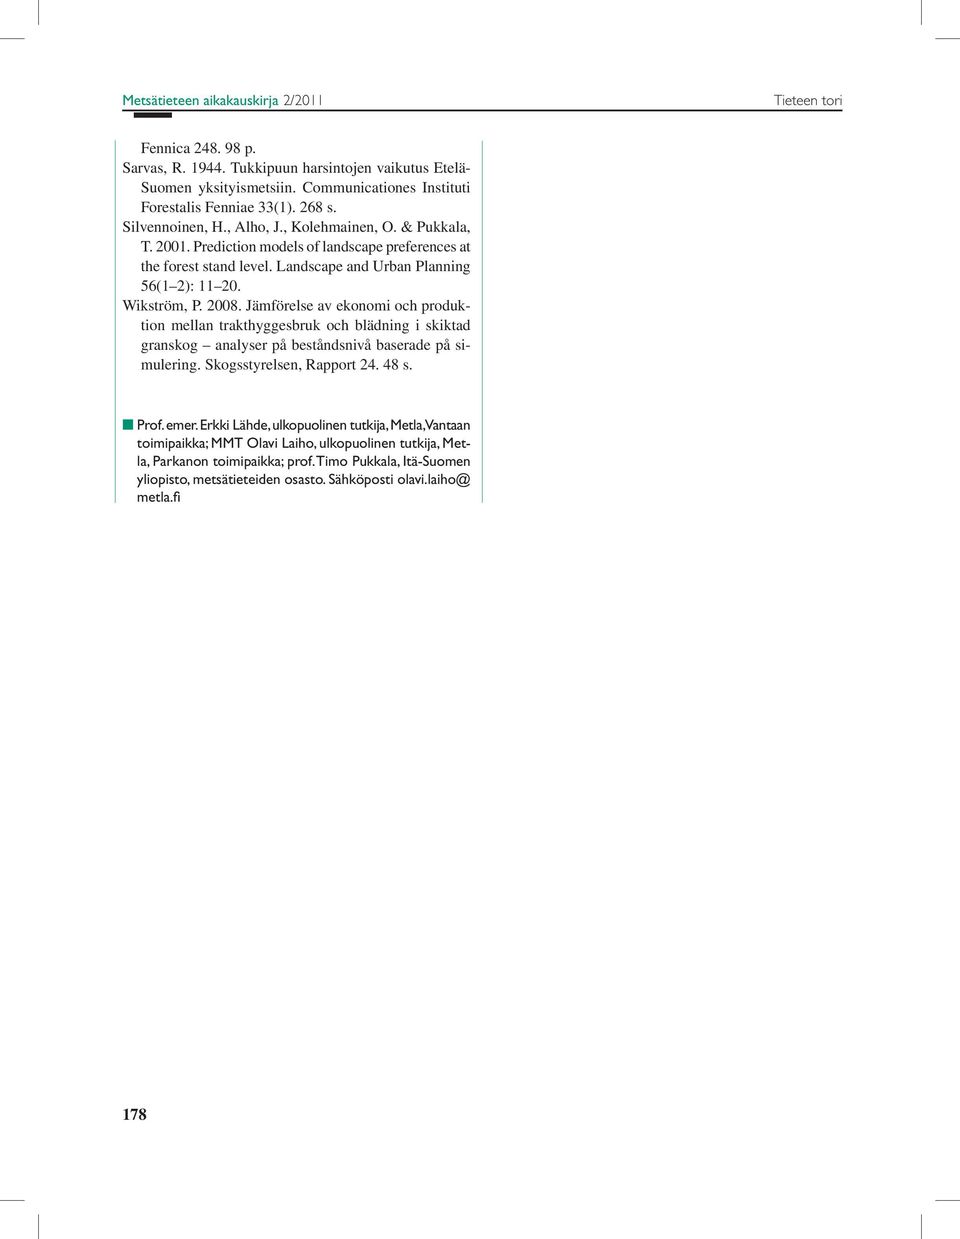 2008. Jämförelse av ekonomi och produktion mellan trakthyggesbruk och blädning i skiktad granskog analyser på beståndsnivå baserade på simulering. Skogsstyrelsen, Rapport 24. 48 s. n Prof. emer.